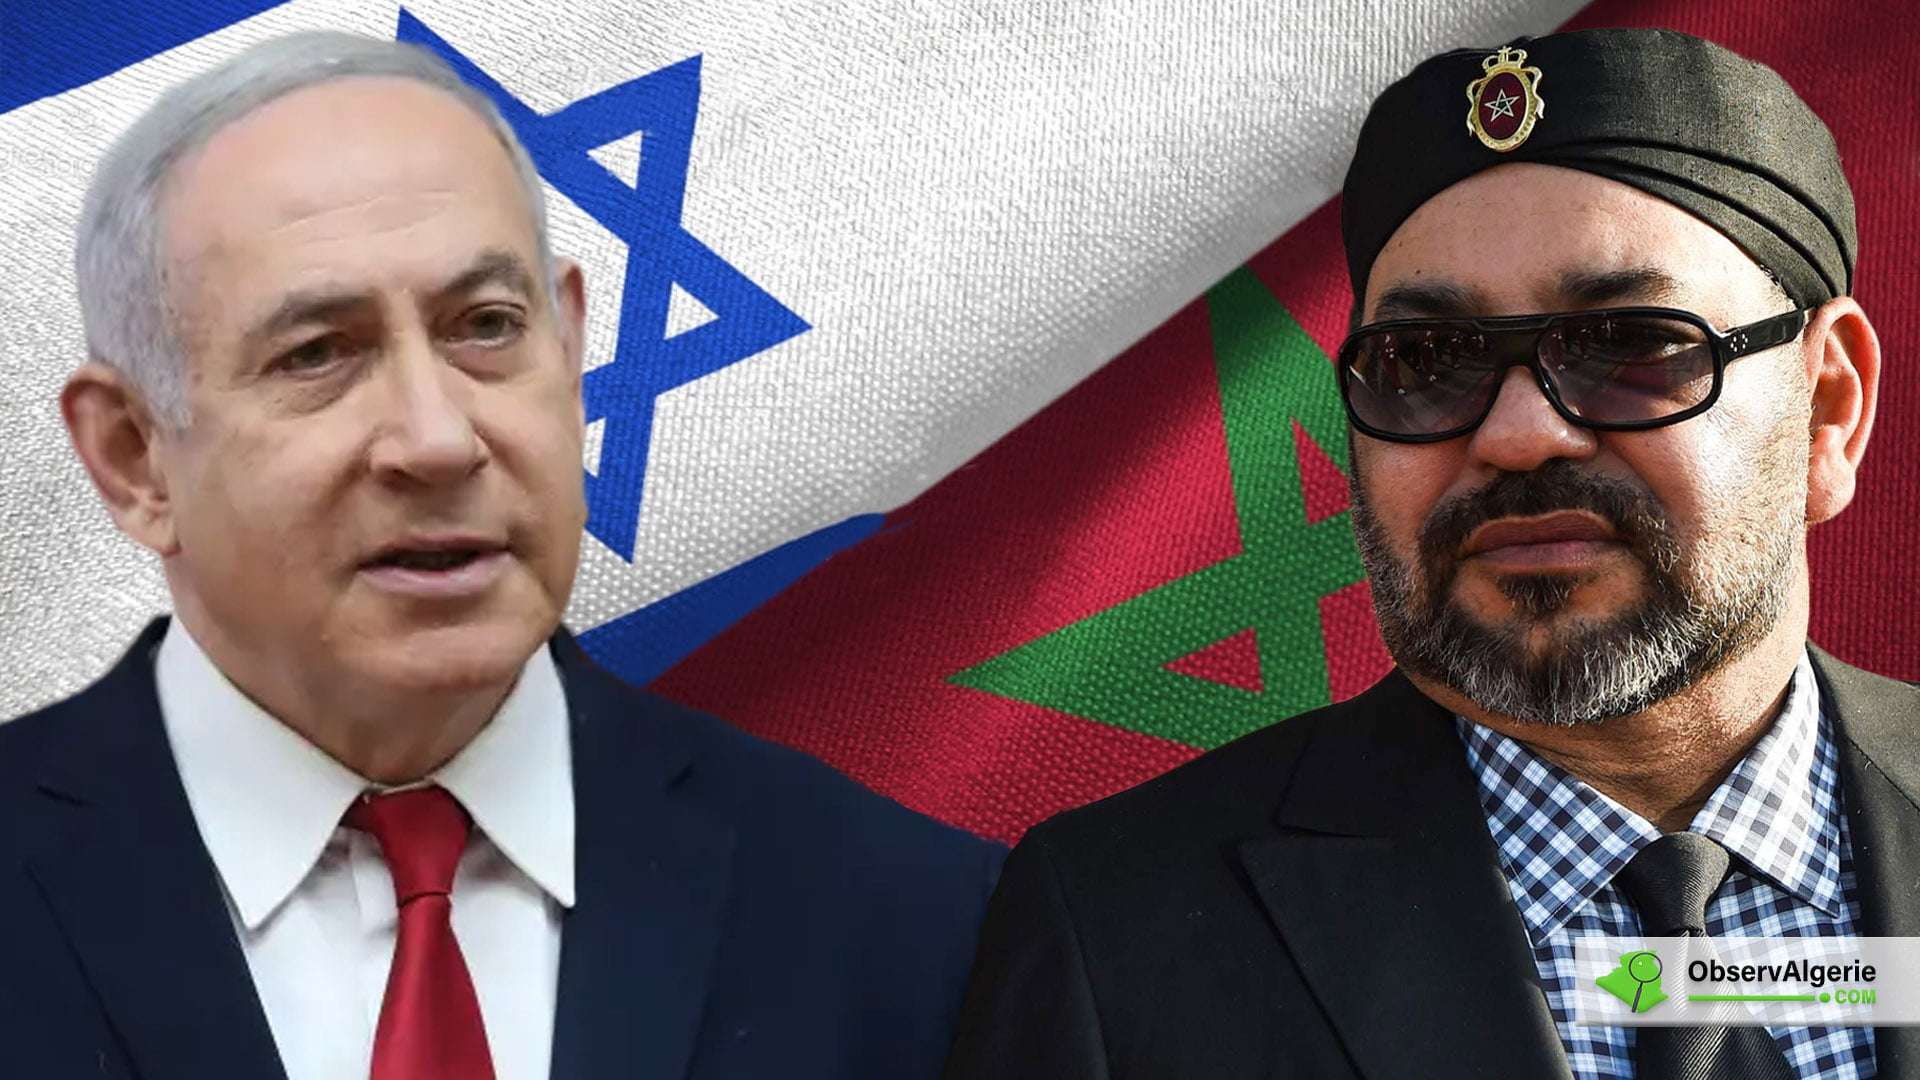 ‘Marokko wil bemiddelen in conflict tussen Israël en Palestijnen’